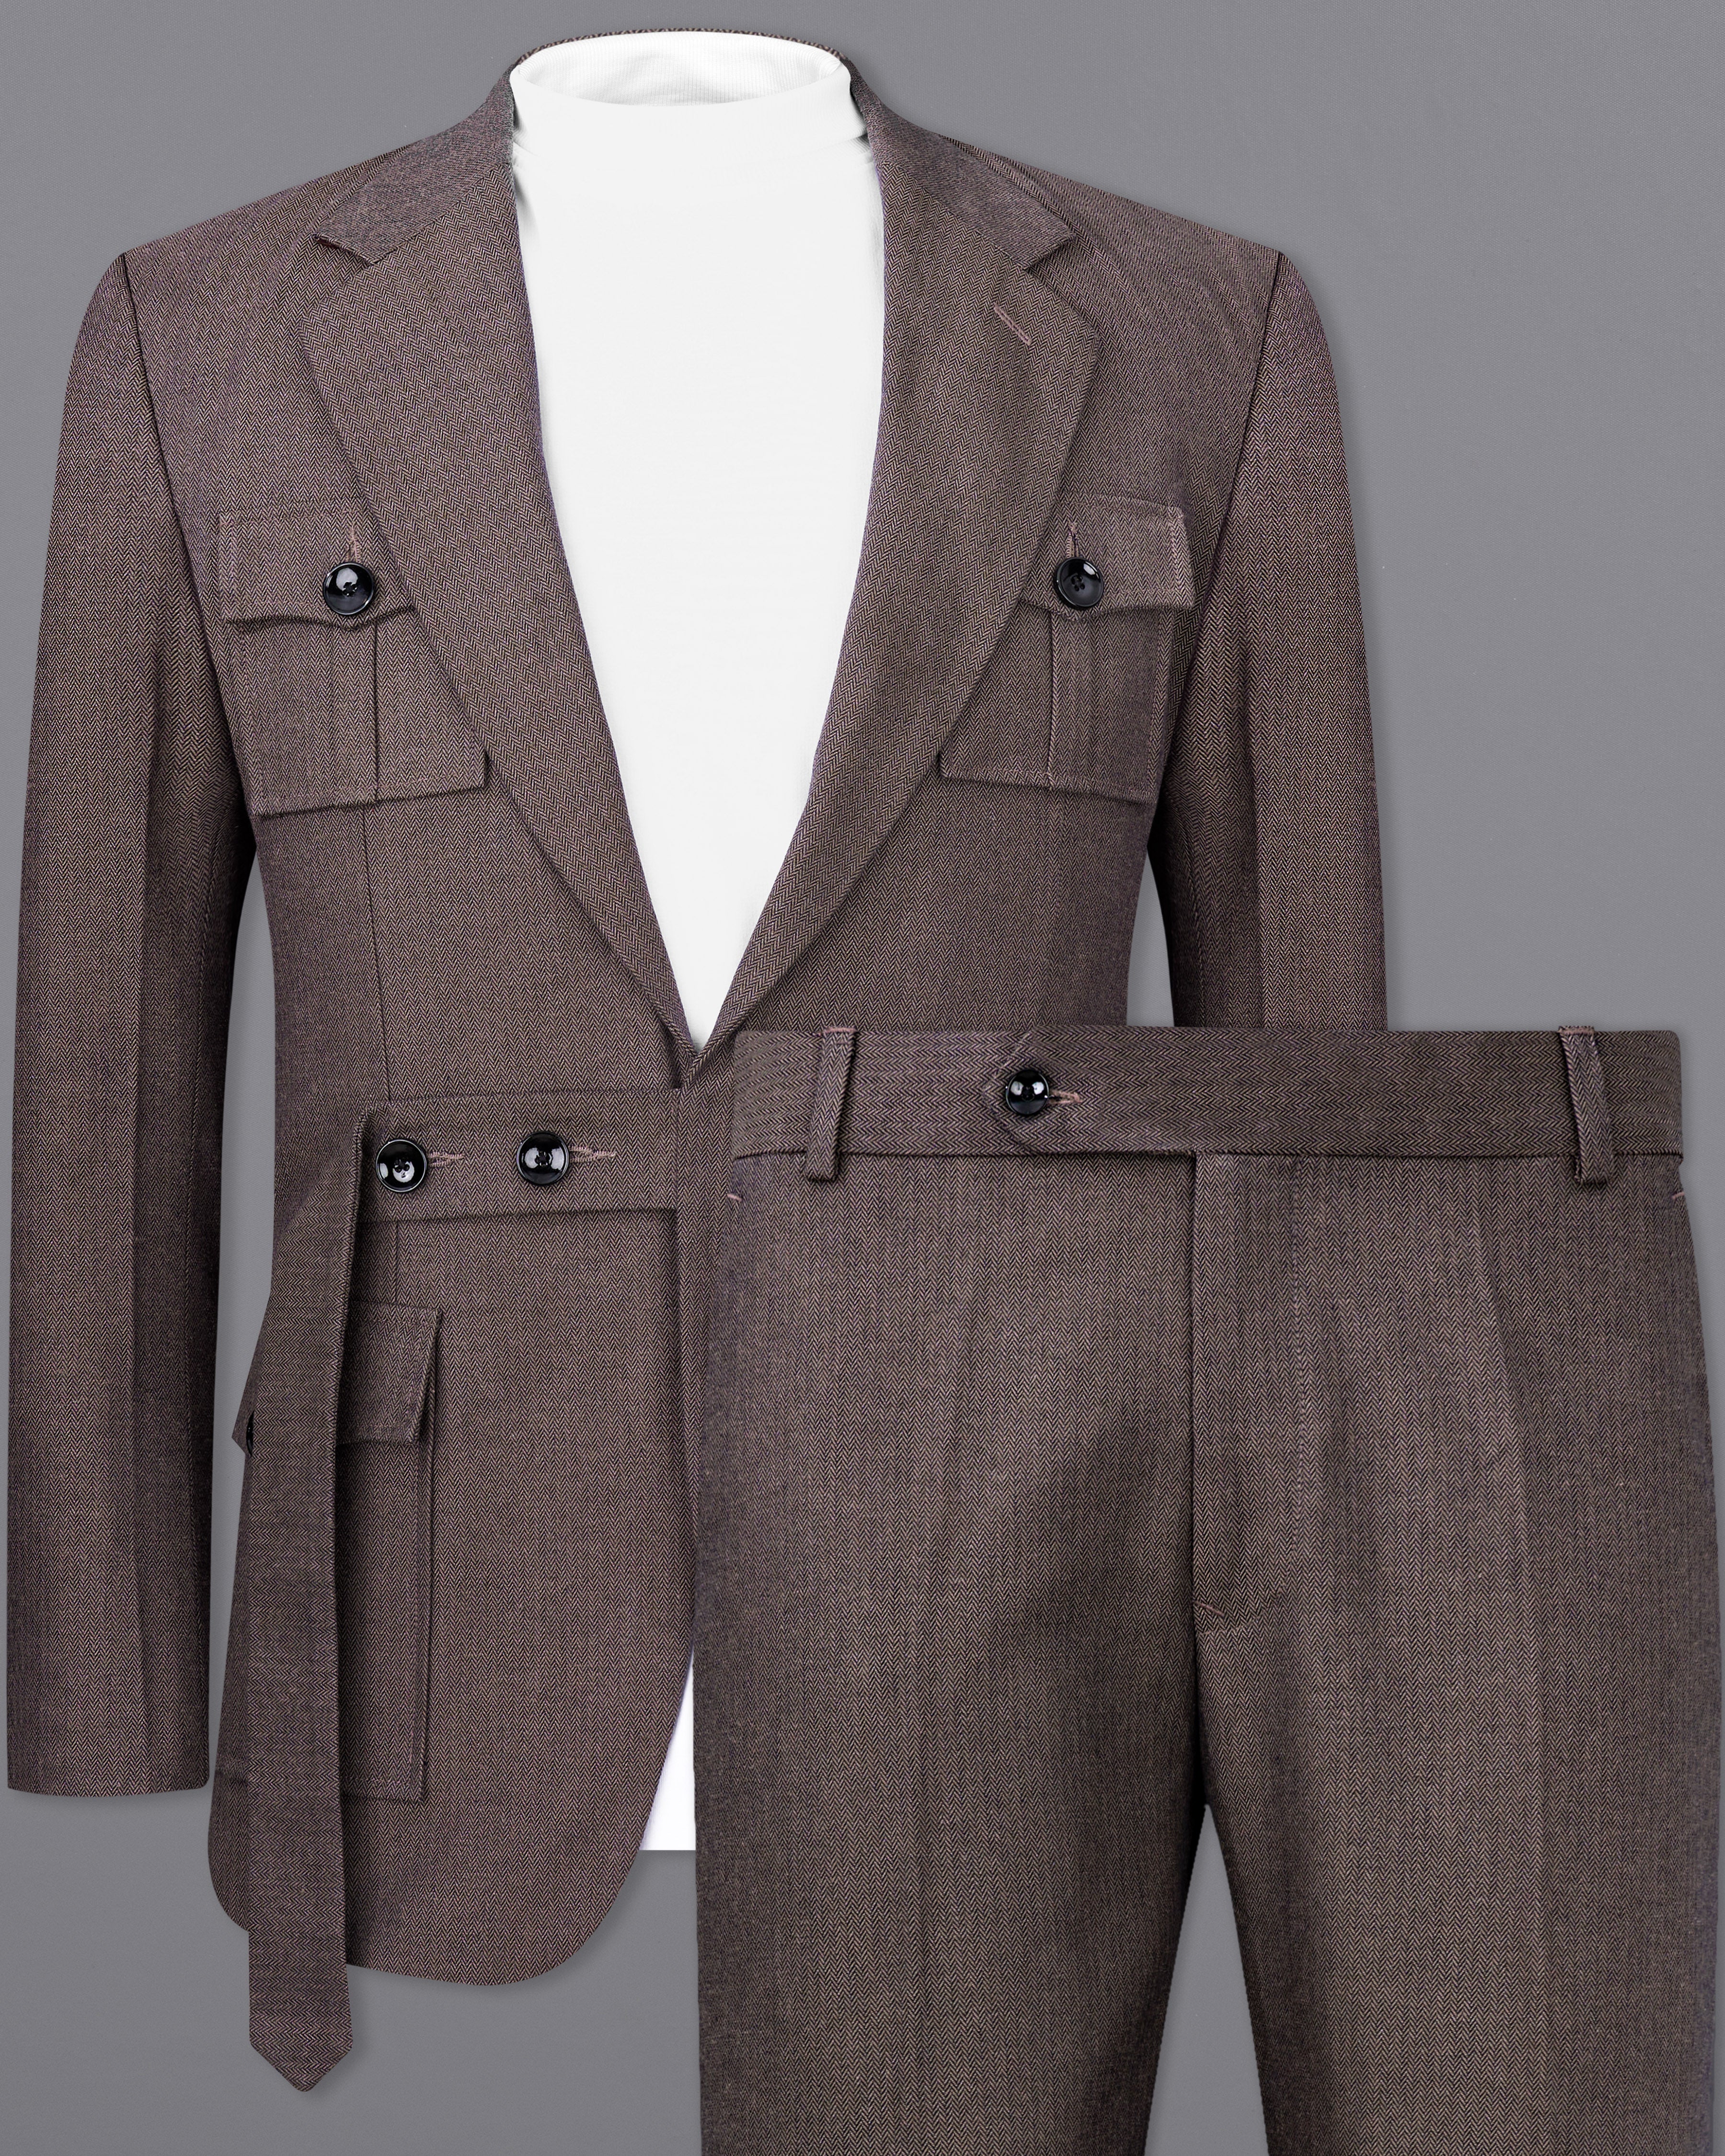 Iridium Brown Premium Cotton Designer Suit with Functional Belt Fastening ST2367-D3-36, ST2367-D3-38, ST2367-D3-40, ST2367-D3-42, ST2367-D3-44, ST2367-D3-46, ST2367-D3-48, ST2367-D3-50, ST2367-D3-52, ST2367-D3-54, ST2367-D3-56, ST2367-D3-58, ST2367-D3-60